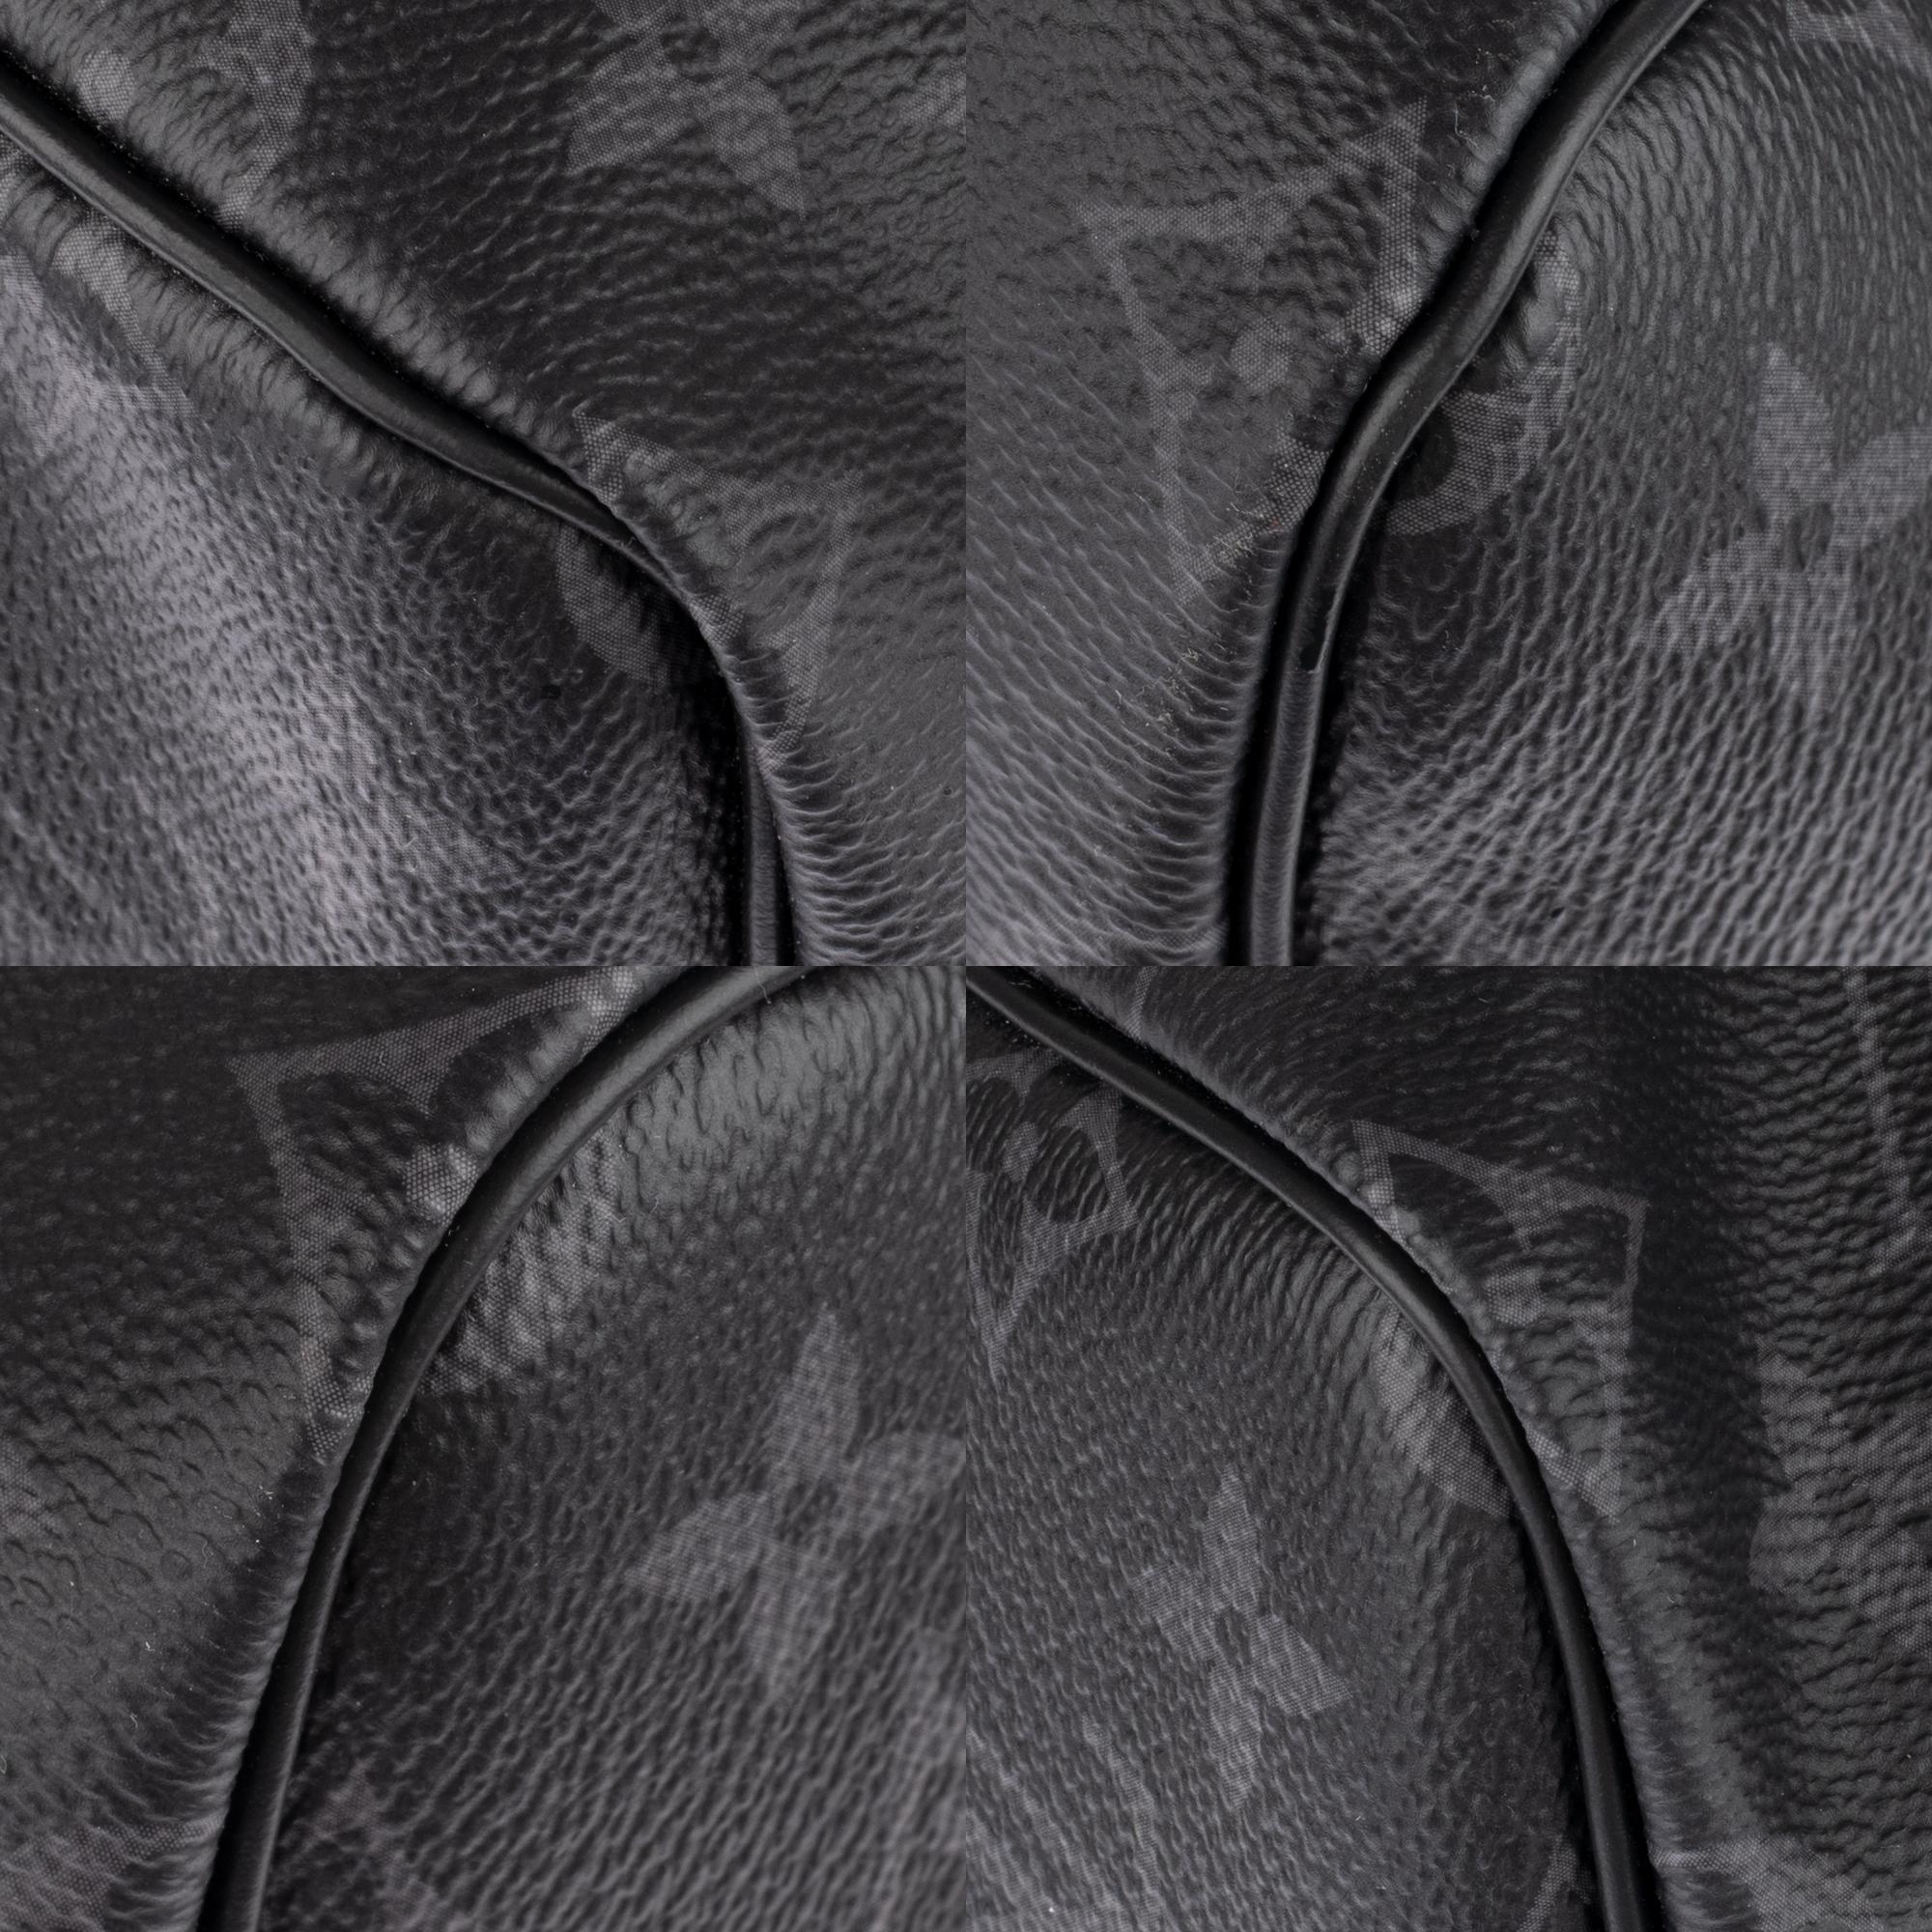 Brand New Customized BATBAG :  Louis Vuitton Keepall 55 Eclipse strap! 3